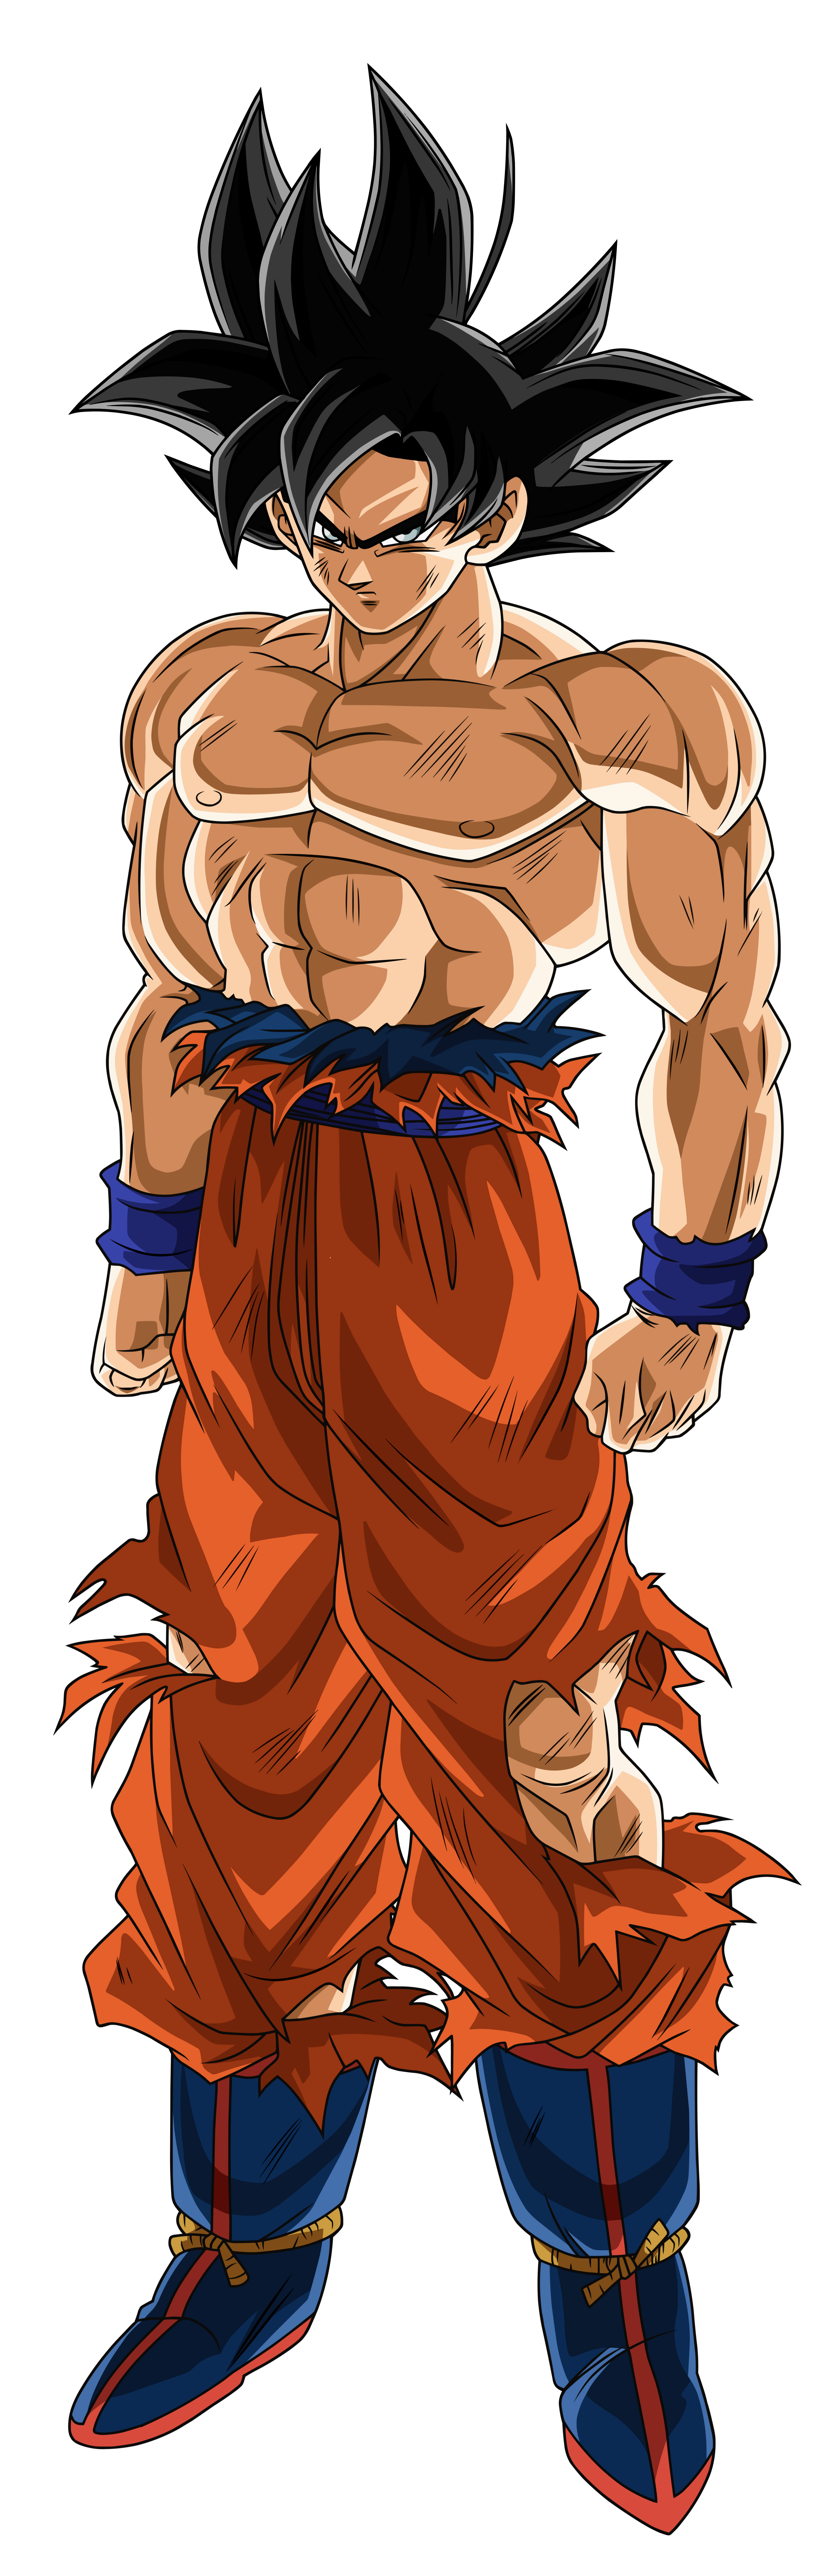 Goku (Super Saiyan Blue) by MdShakibulHasan on DeviantArt